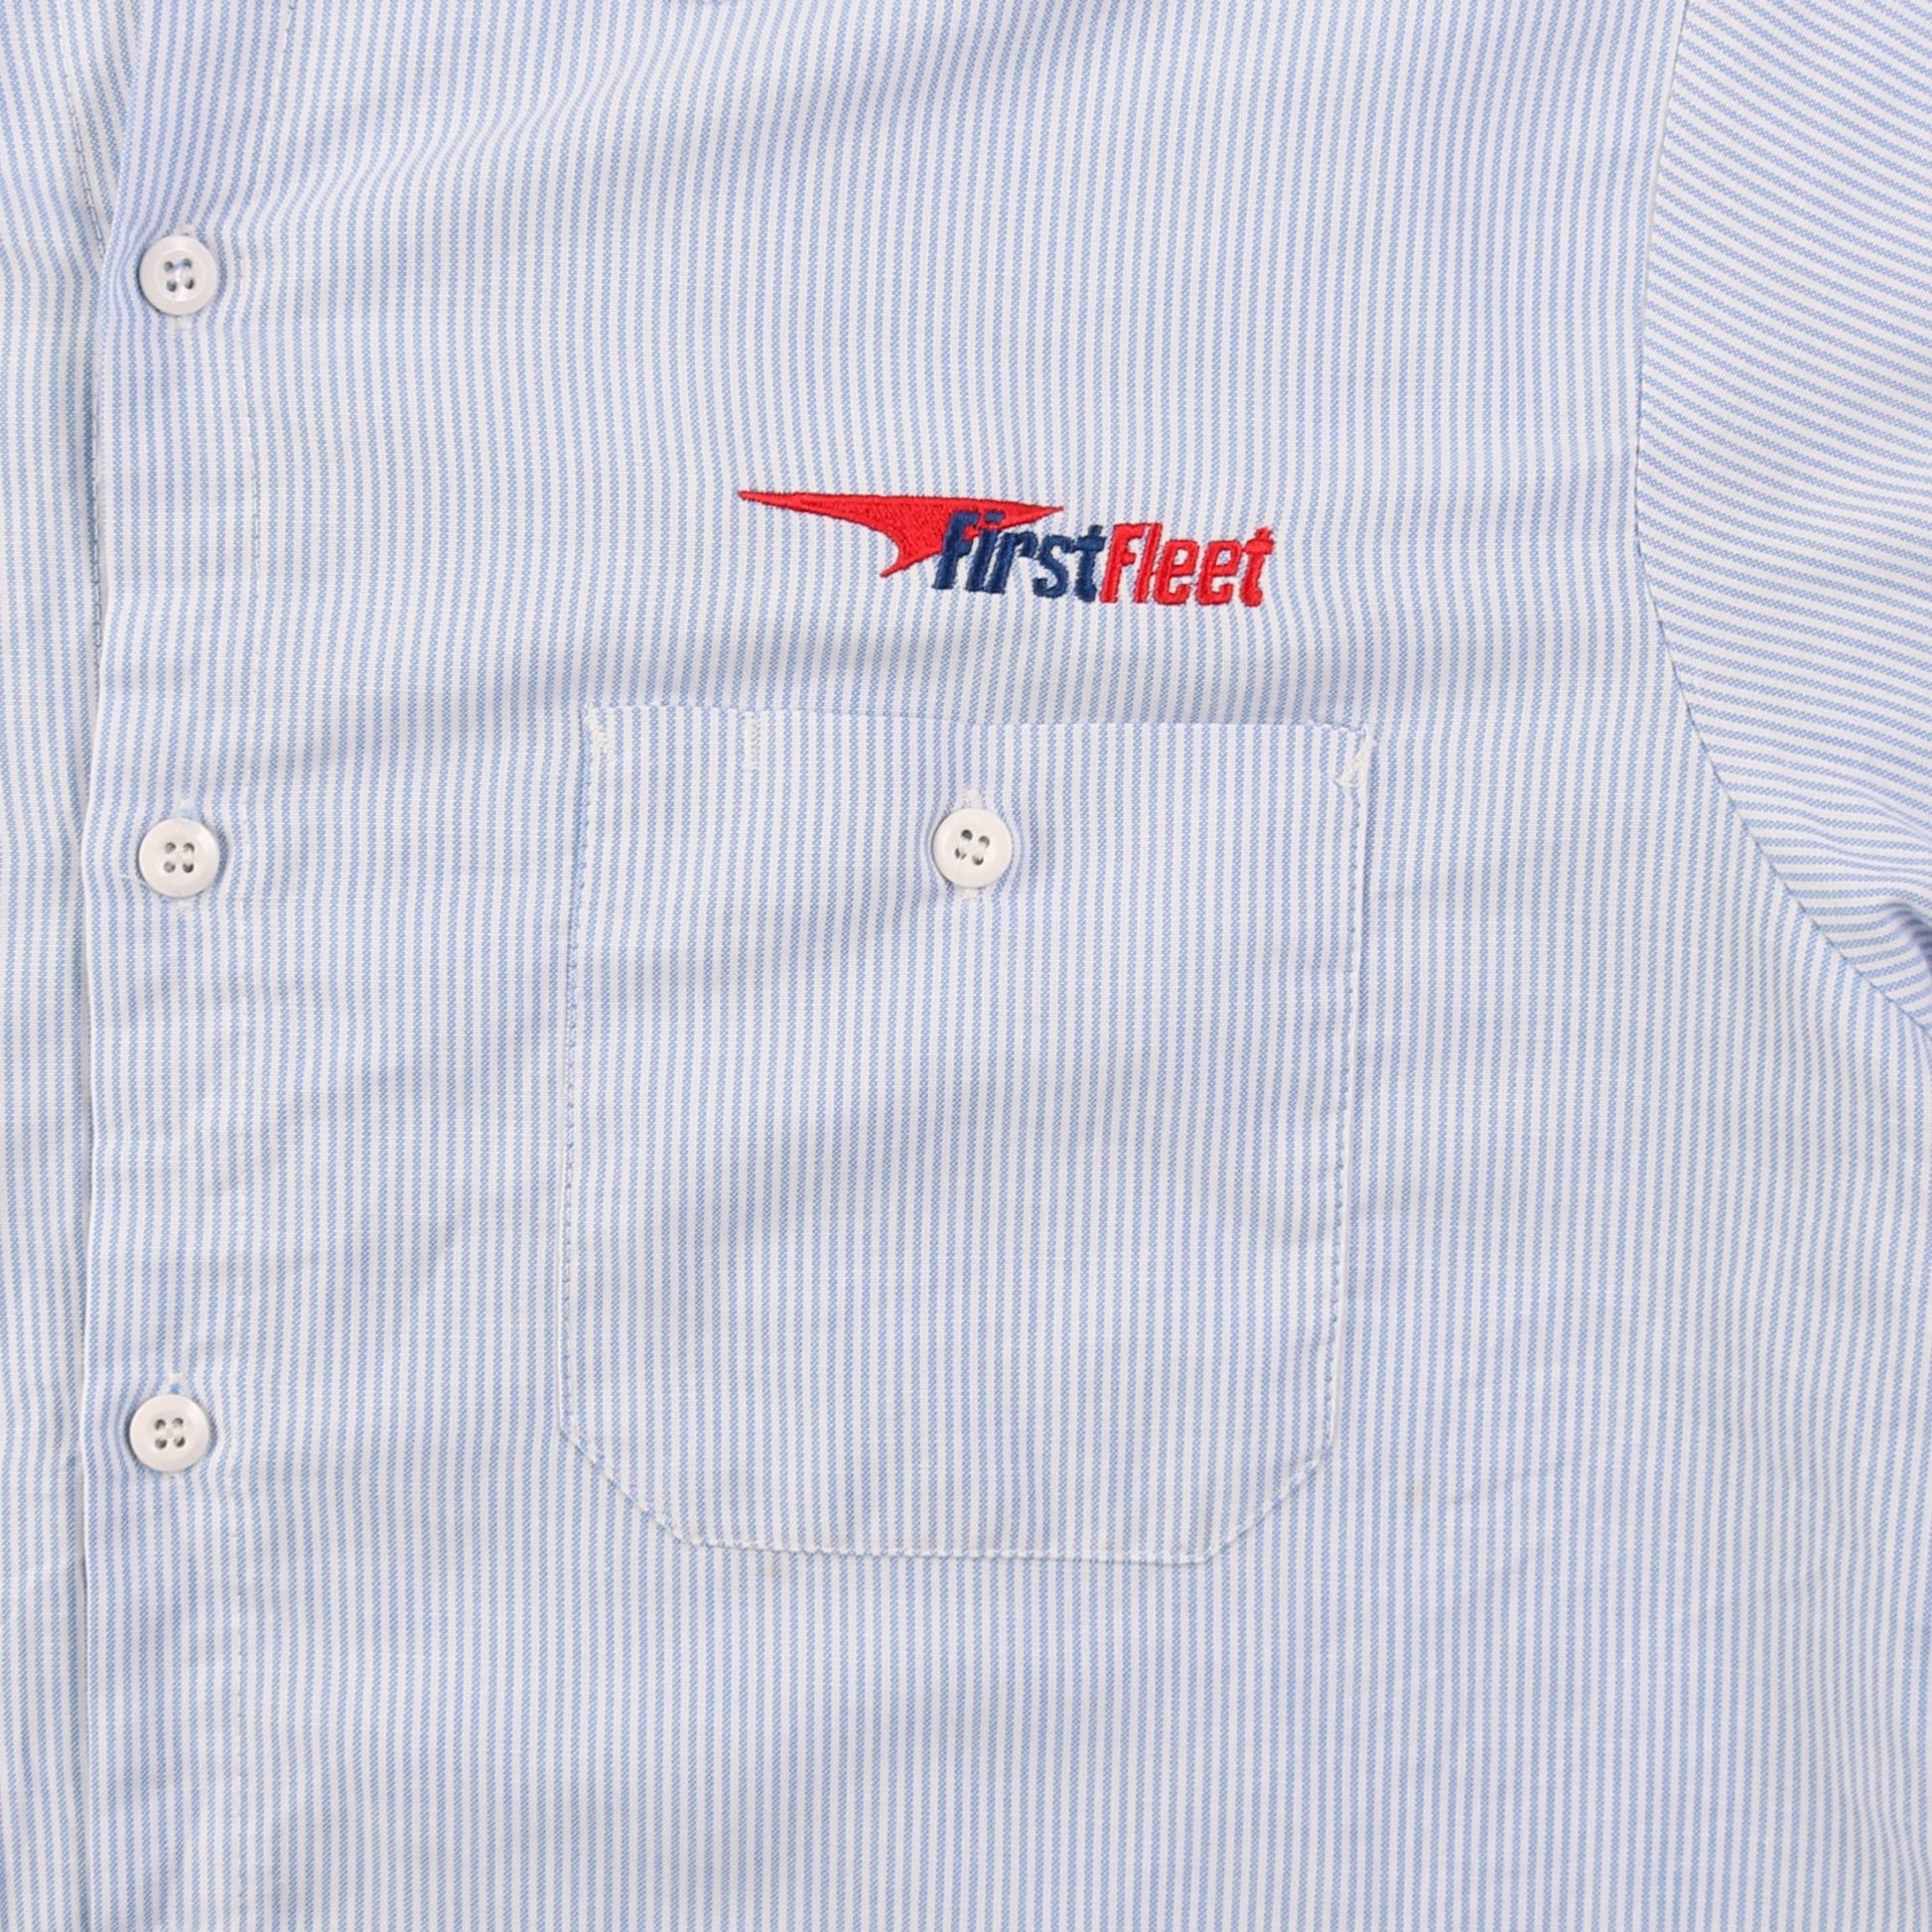 'First Fleet' Garage Work Shirt - American Madness